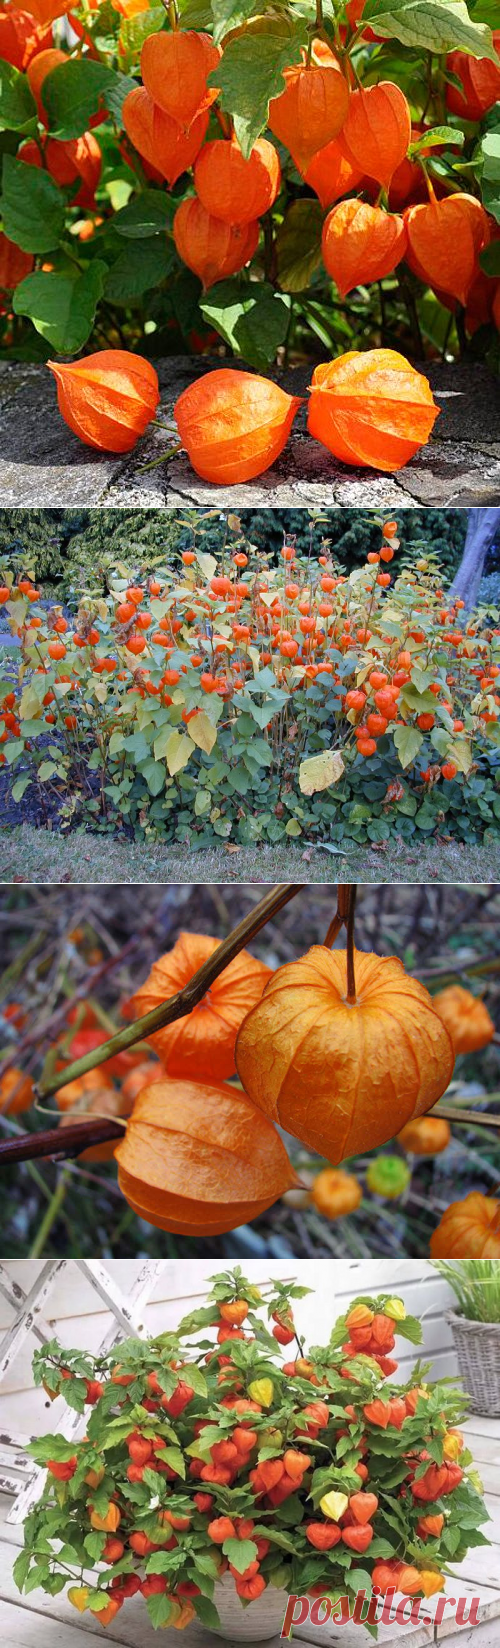 Физалис (55 фото): декоративный, ягодный, выращивание из семян, уход, название растения с оранжевыми ягодами в цветке